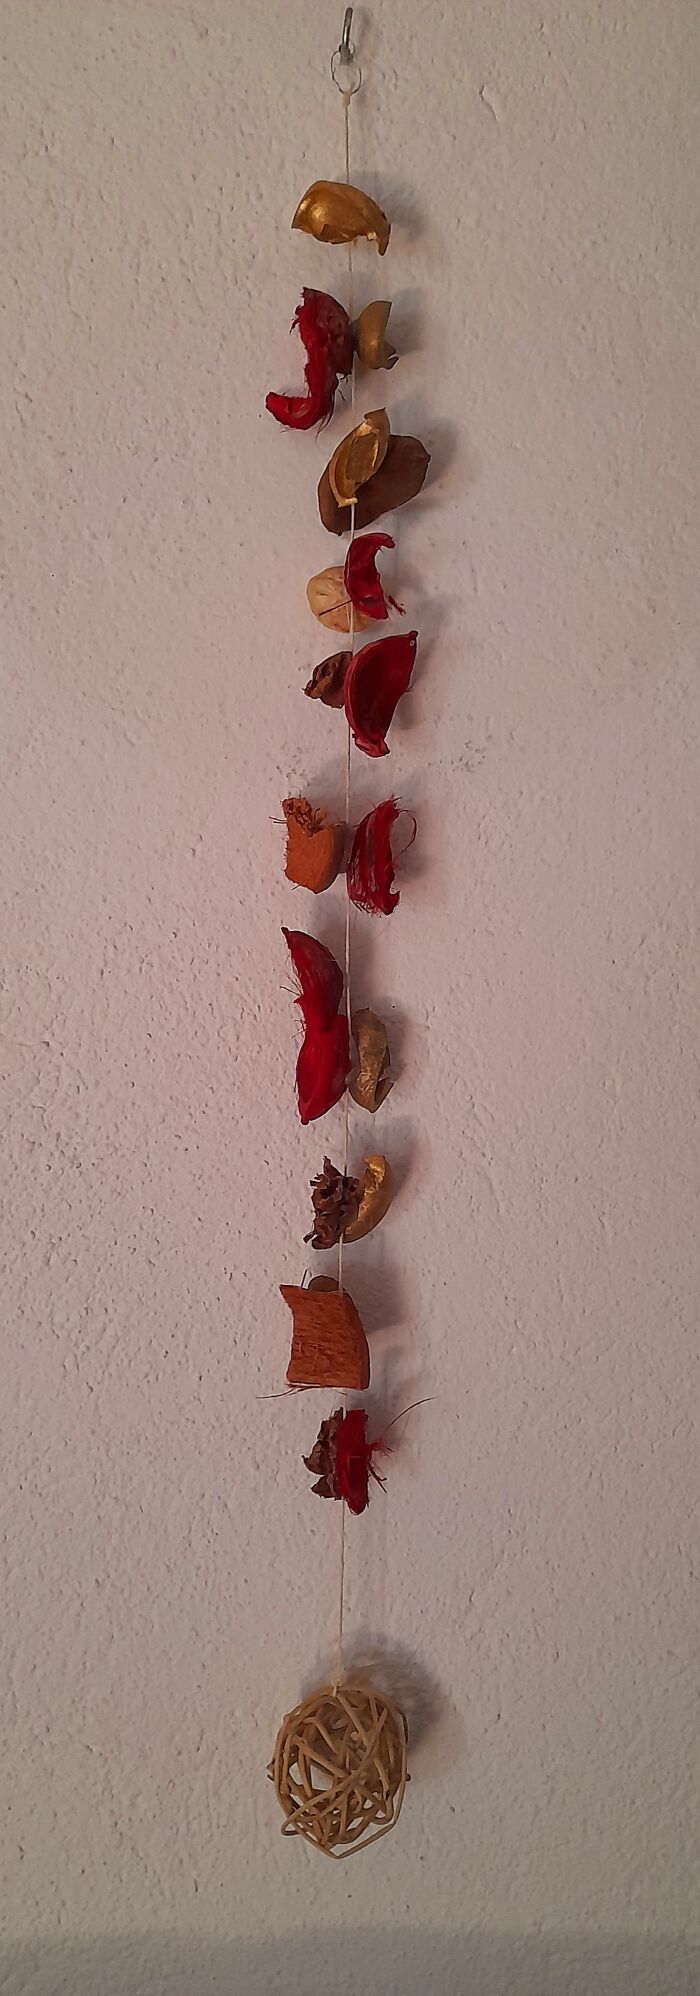 Autumn Pendant. Recycling Potpourri Past Its Scent